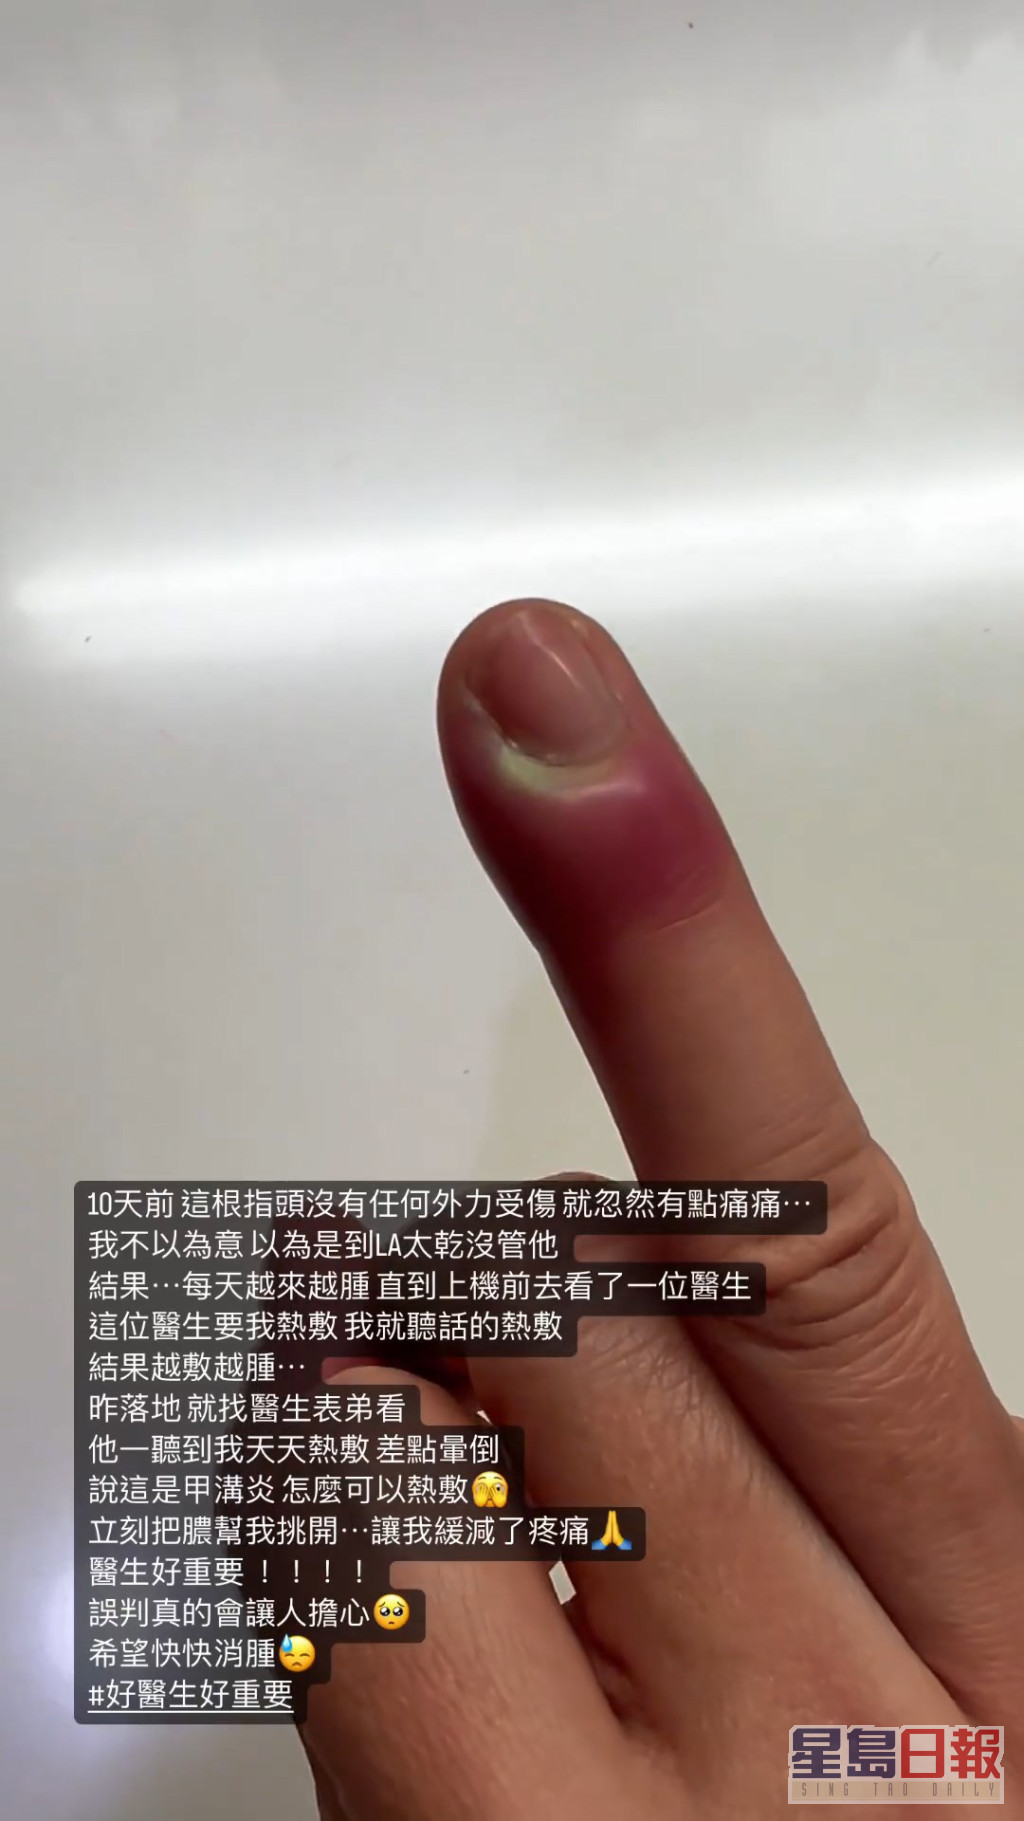 賈靜雯的手指已含膿。